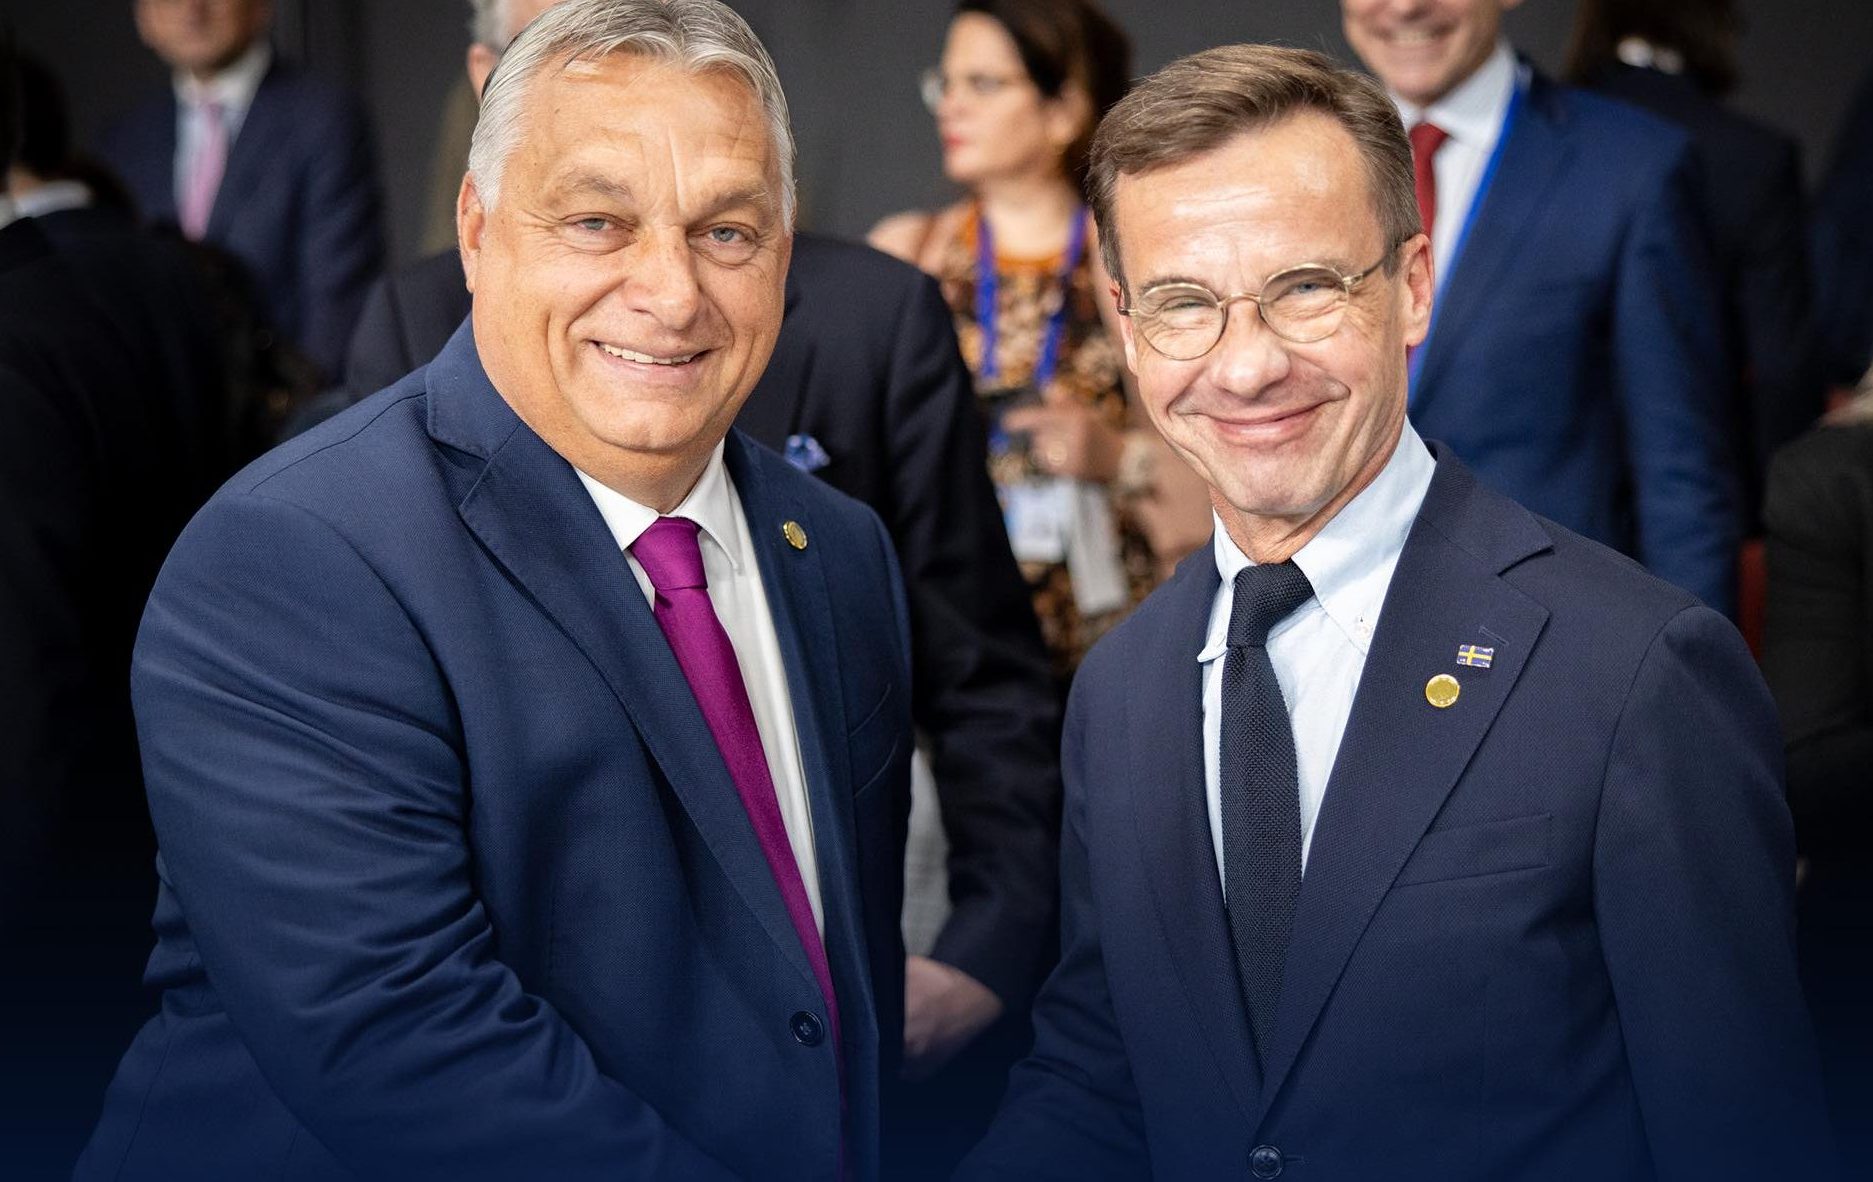 Schwedischer Premierminister von Viktor Orbán nach Ungarn eingeladen